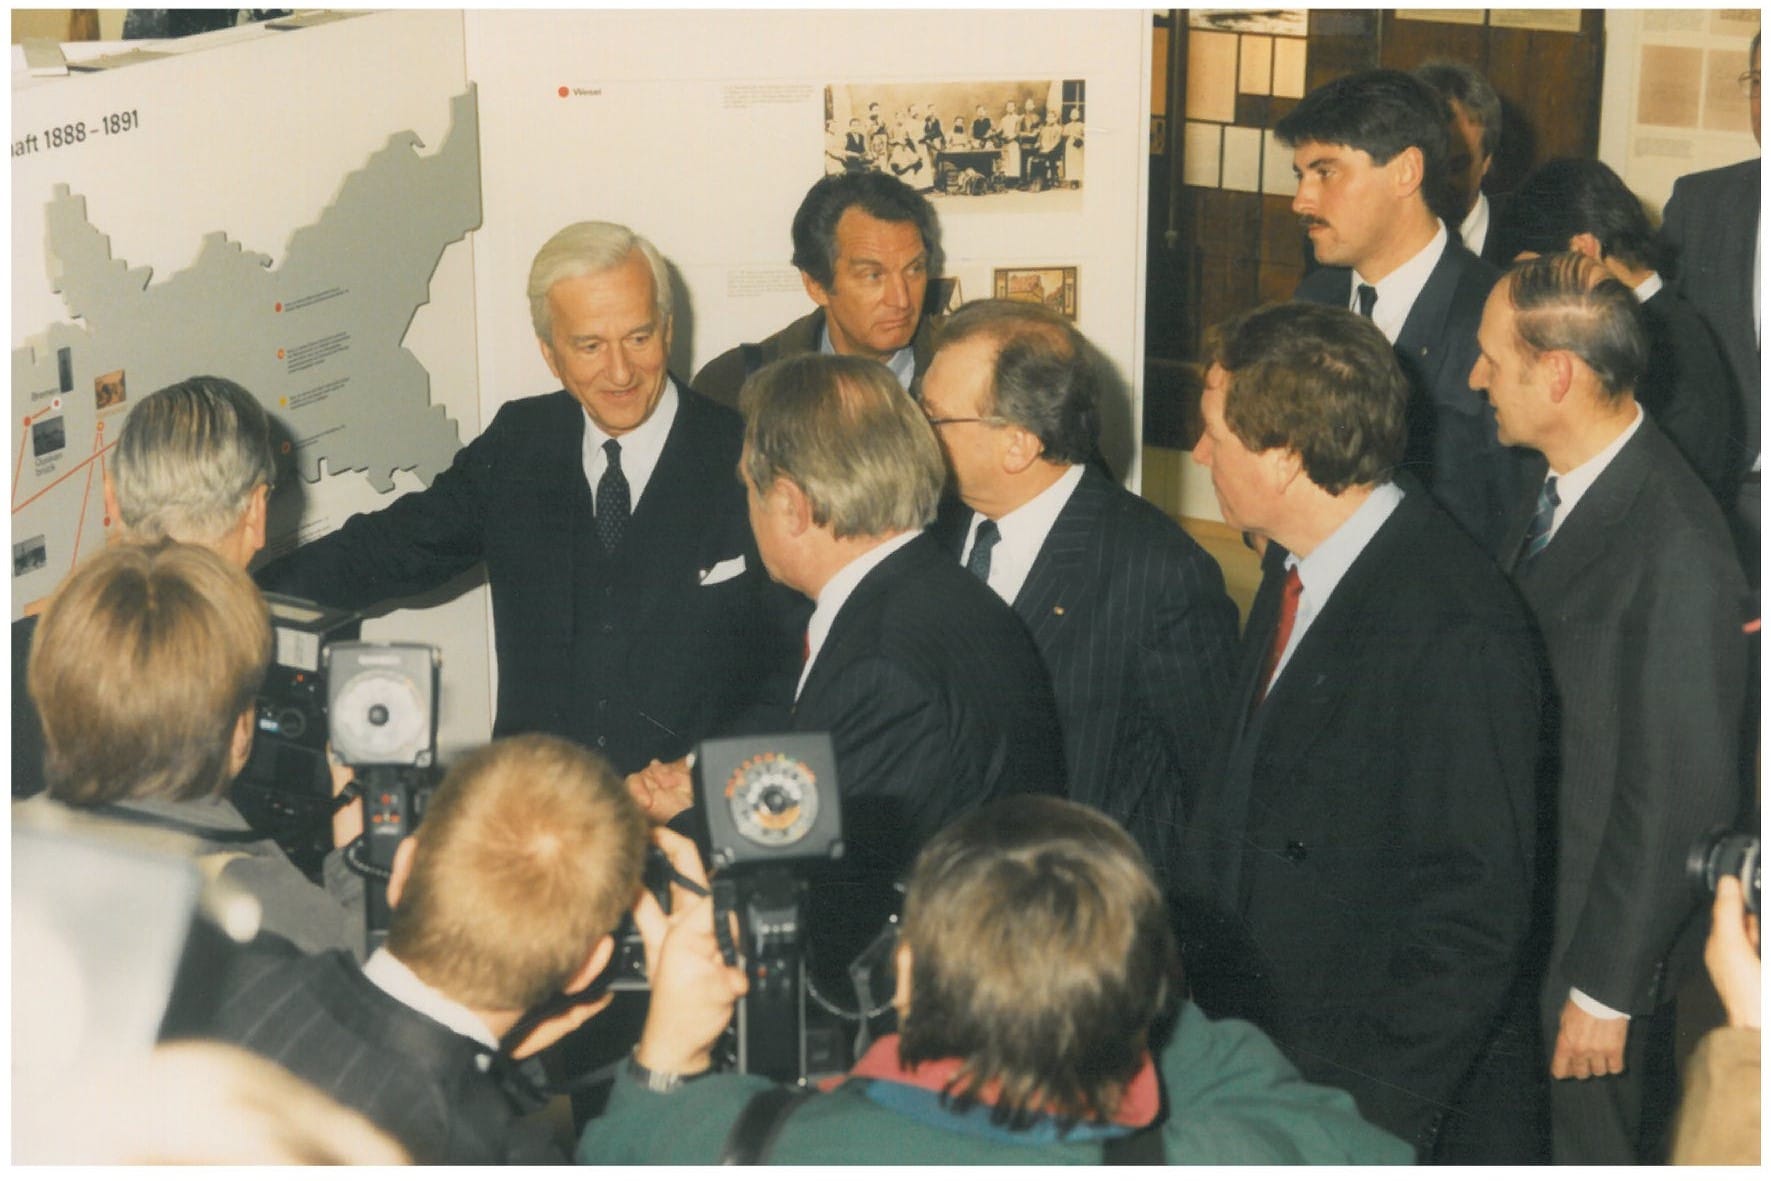 Eröffnung des Friedrich-Ebert-Hauses am 11. Februar 1989 mit Bundespräsident Richard von Weizsäcker